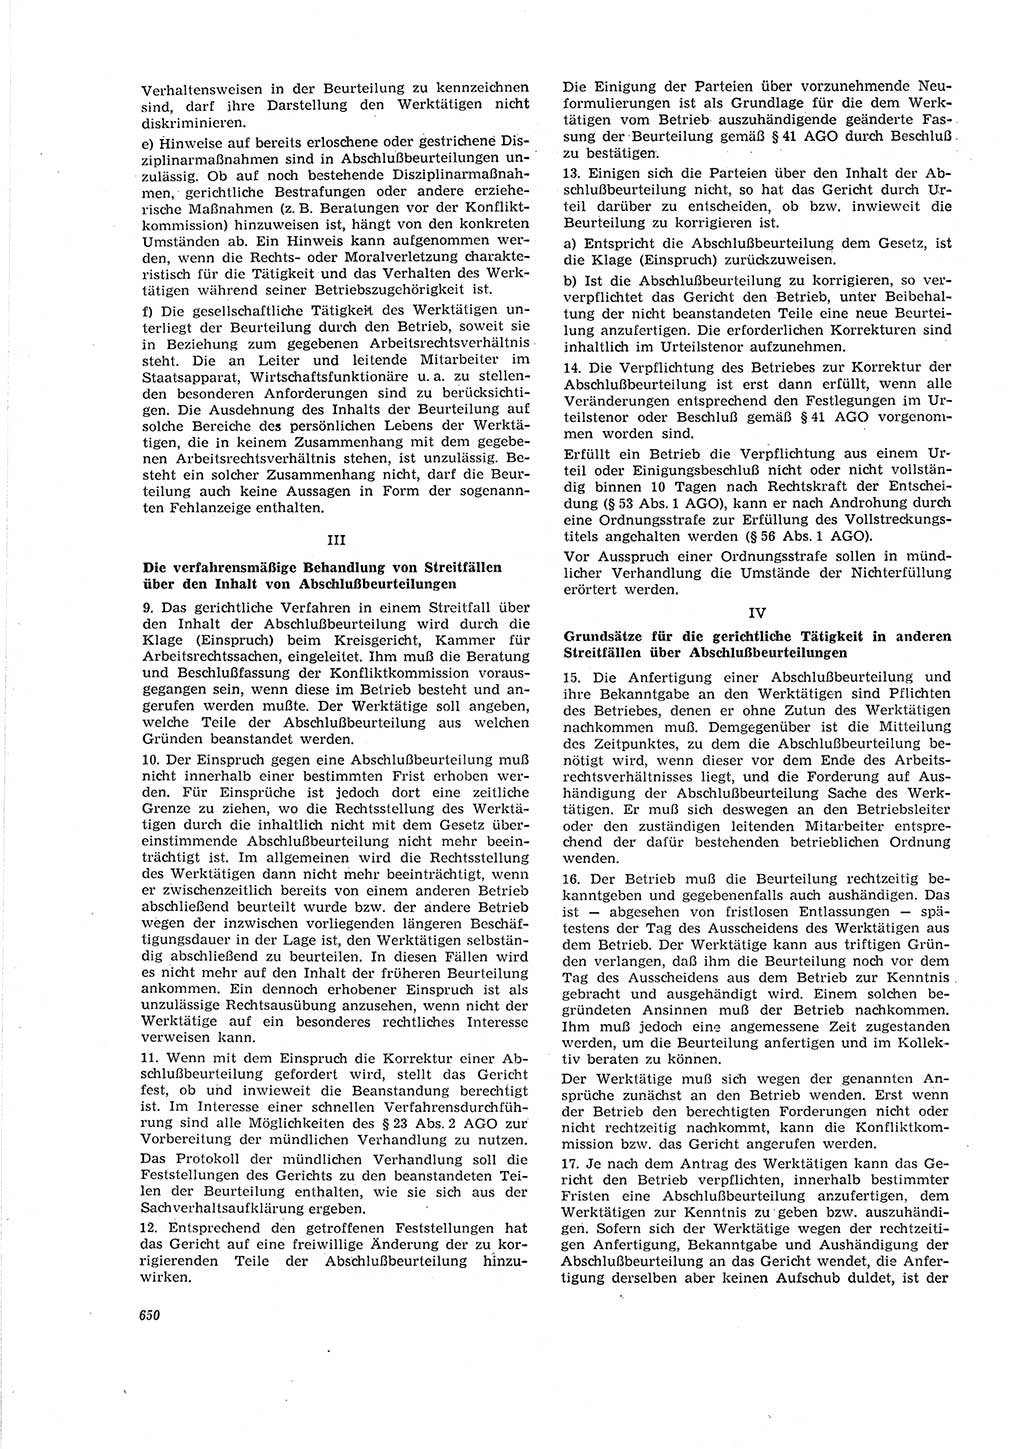 Neue Justiz (NJ), Zeitschrift für Recht und Rechtswissenschaft [Deutsche Demokratische Republik (DDR)], 20. Jahrgang 1966, Seite 650 (NJ DDR 1966, S. 650)